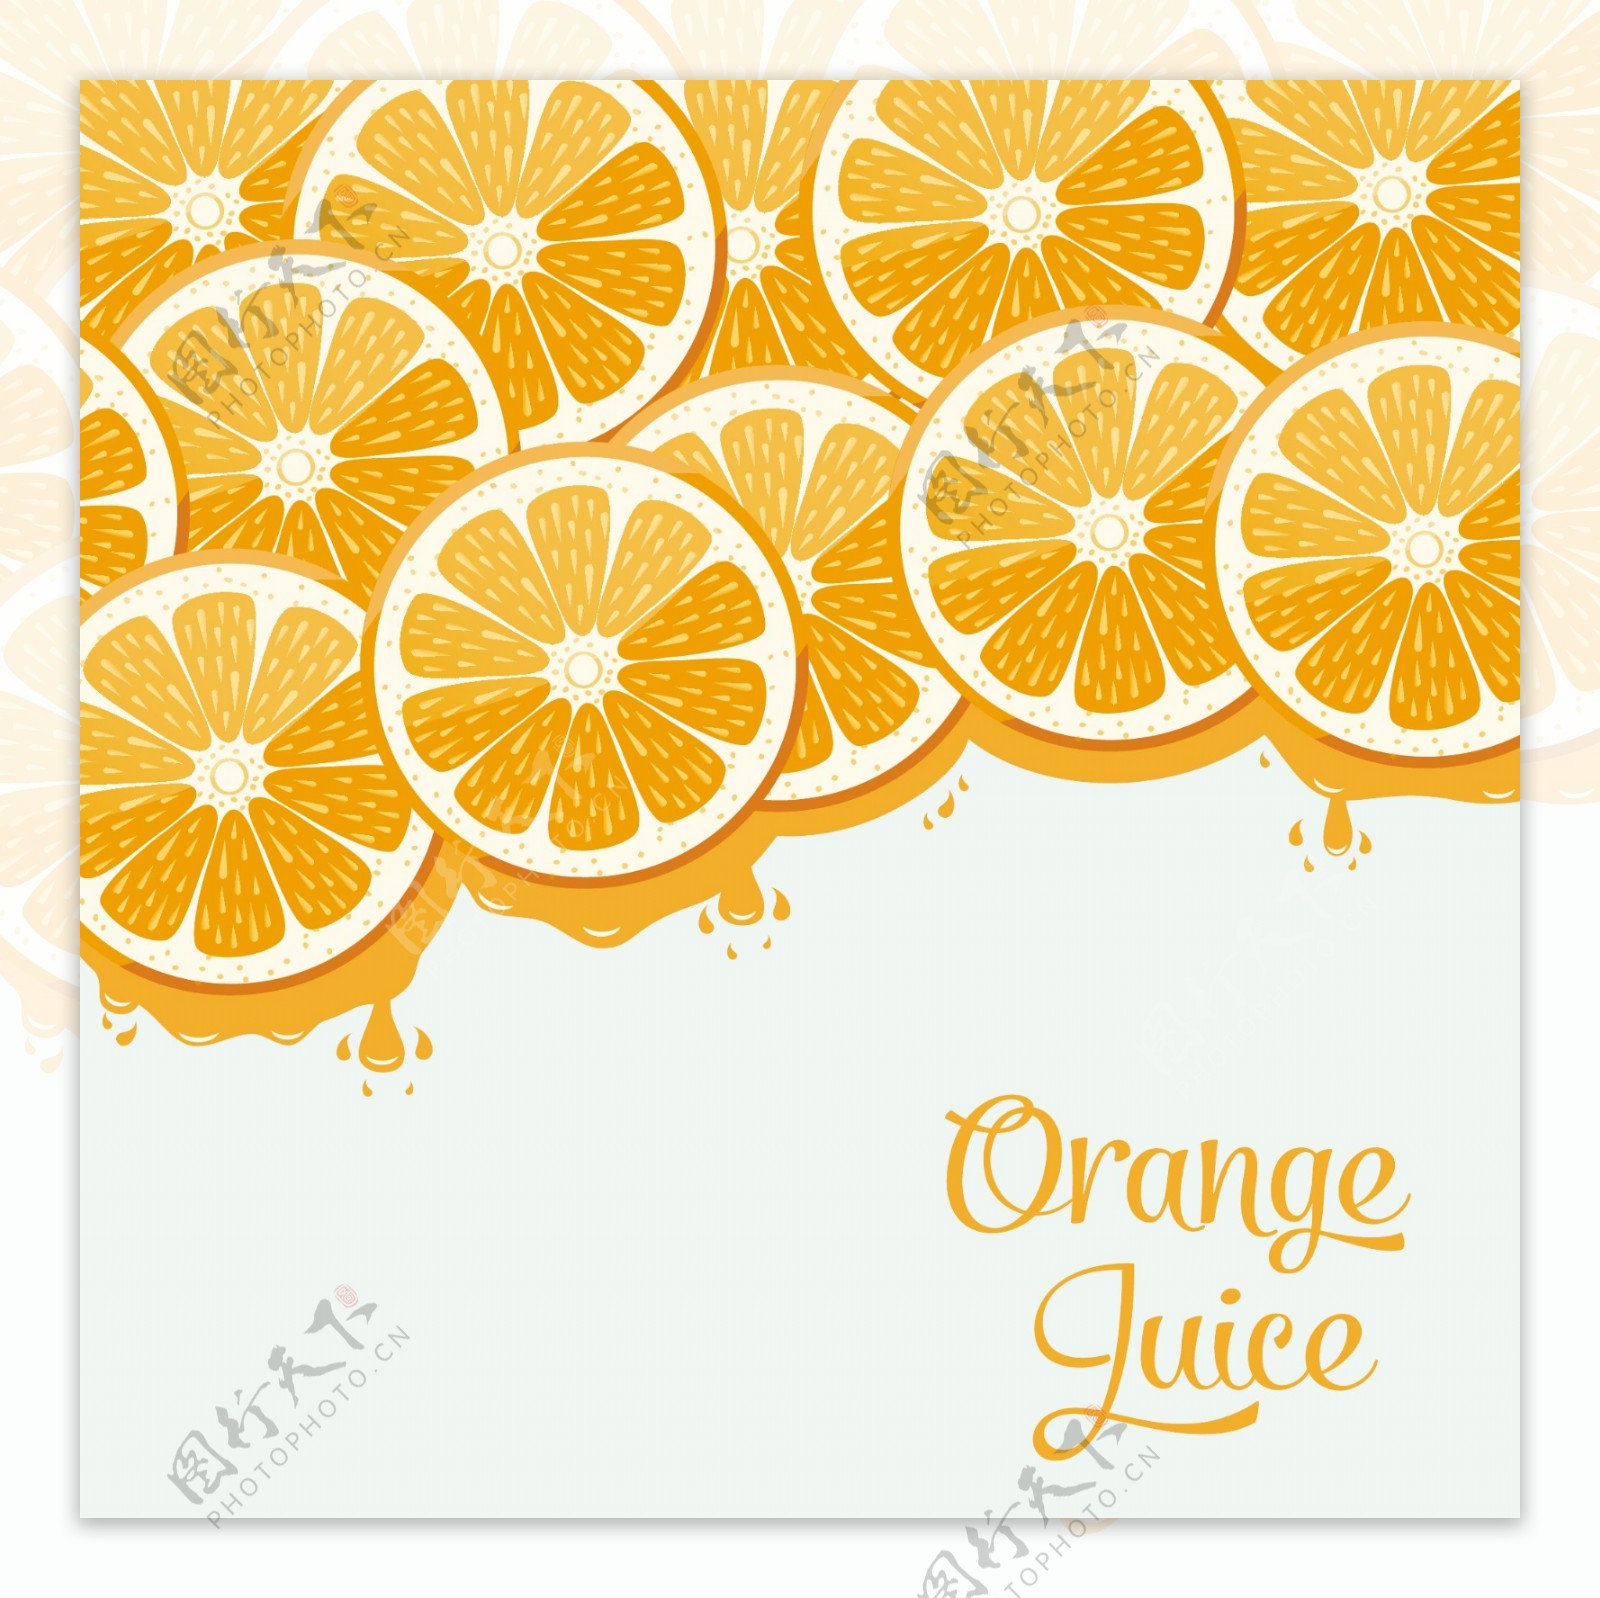 橙汁的设计